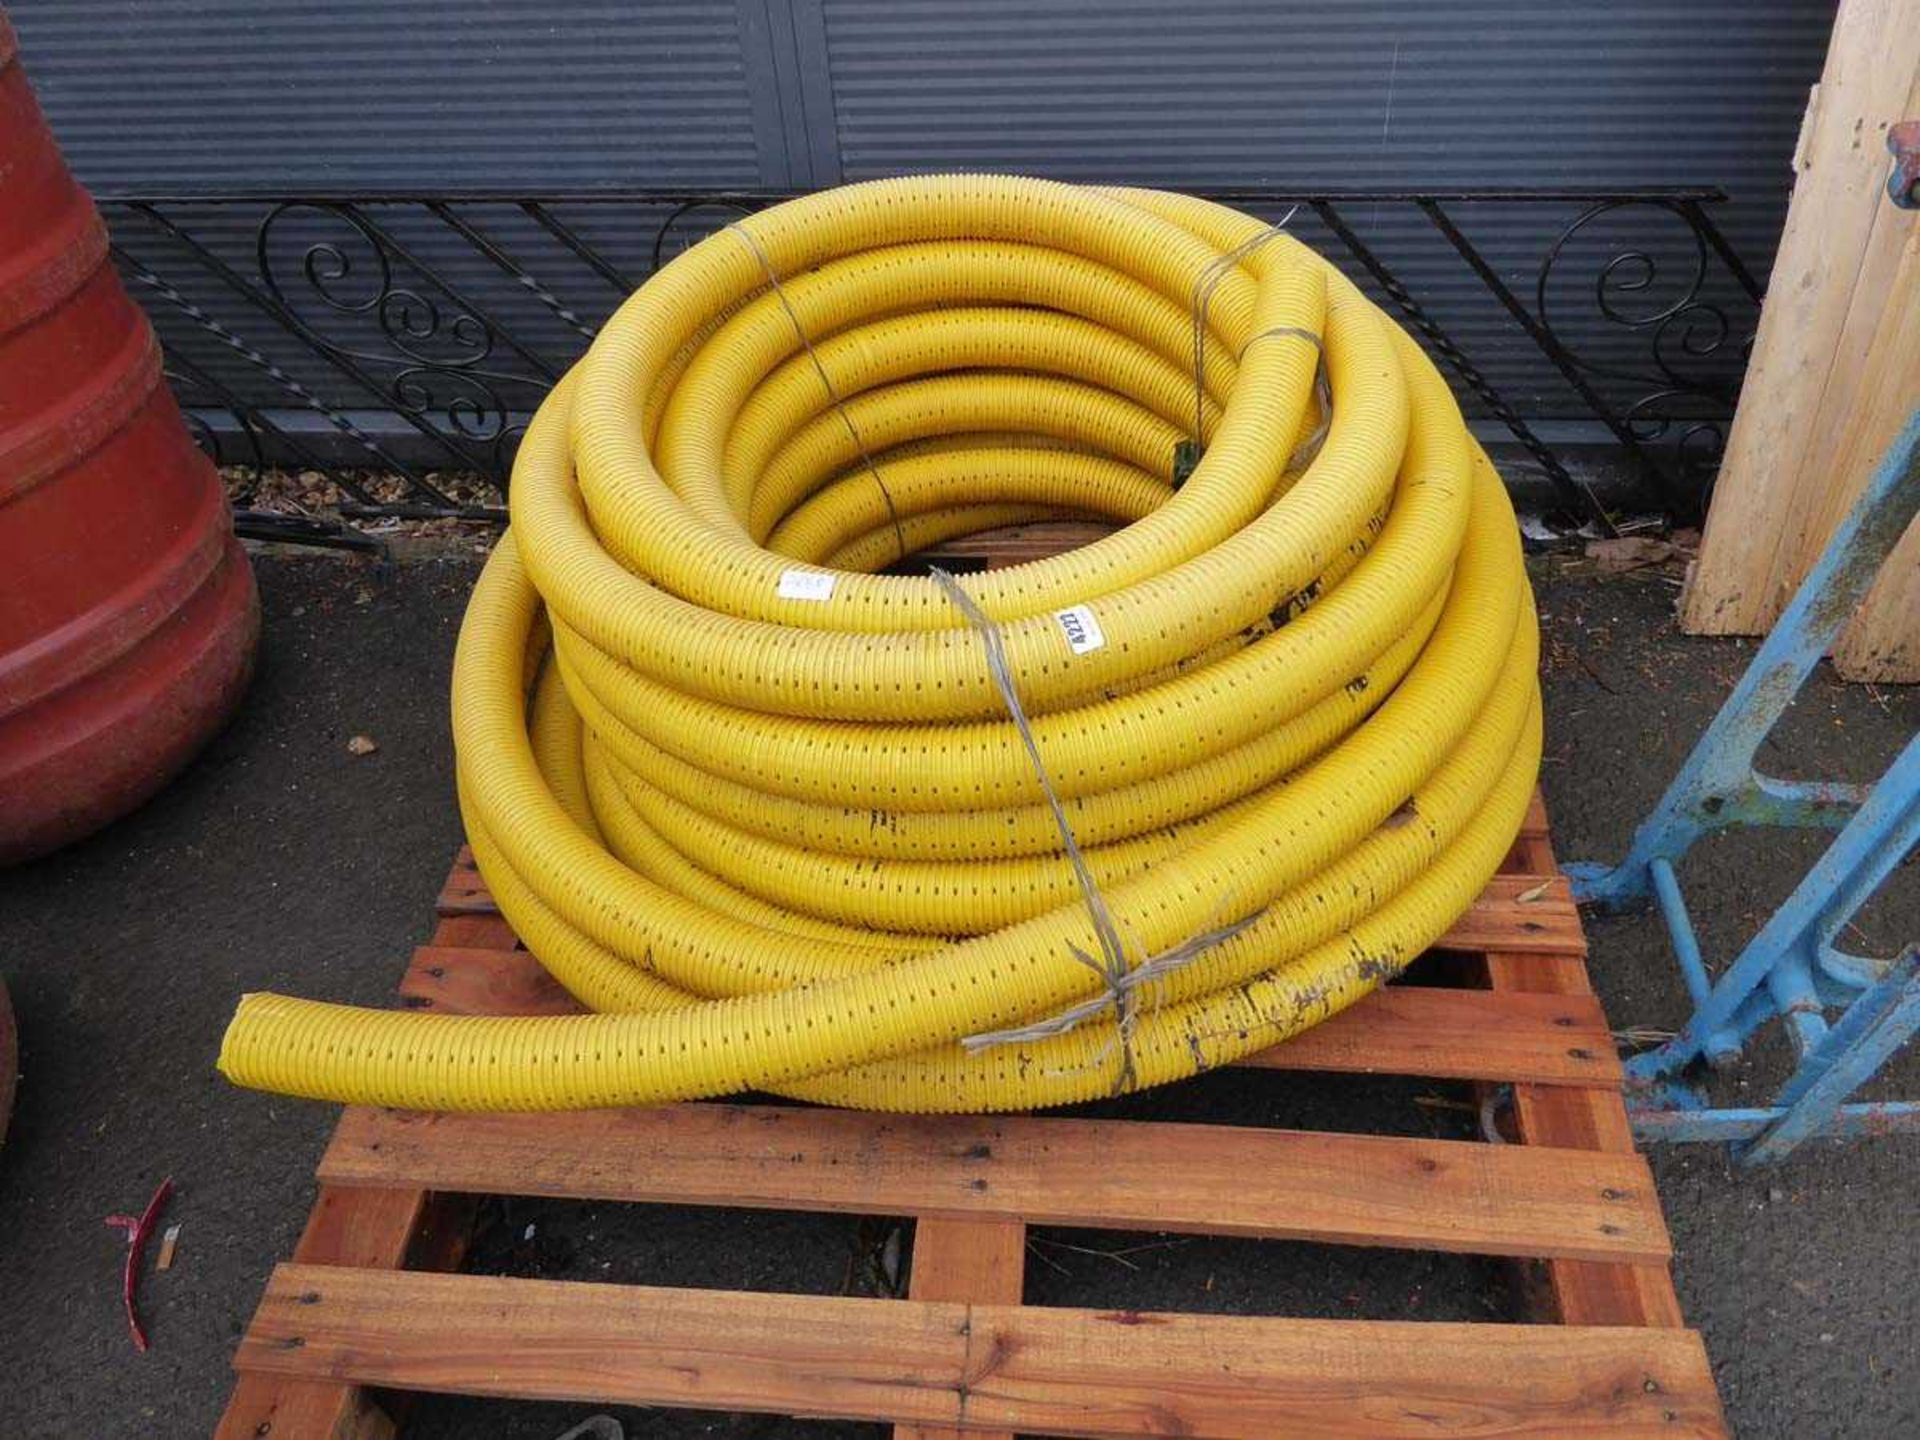 Reel of irrigation hose